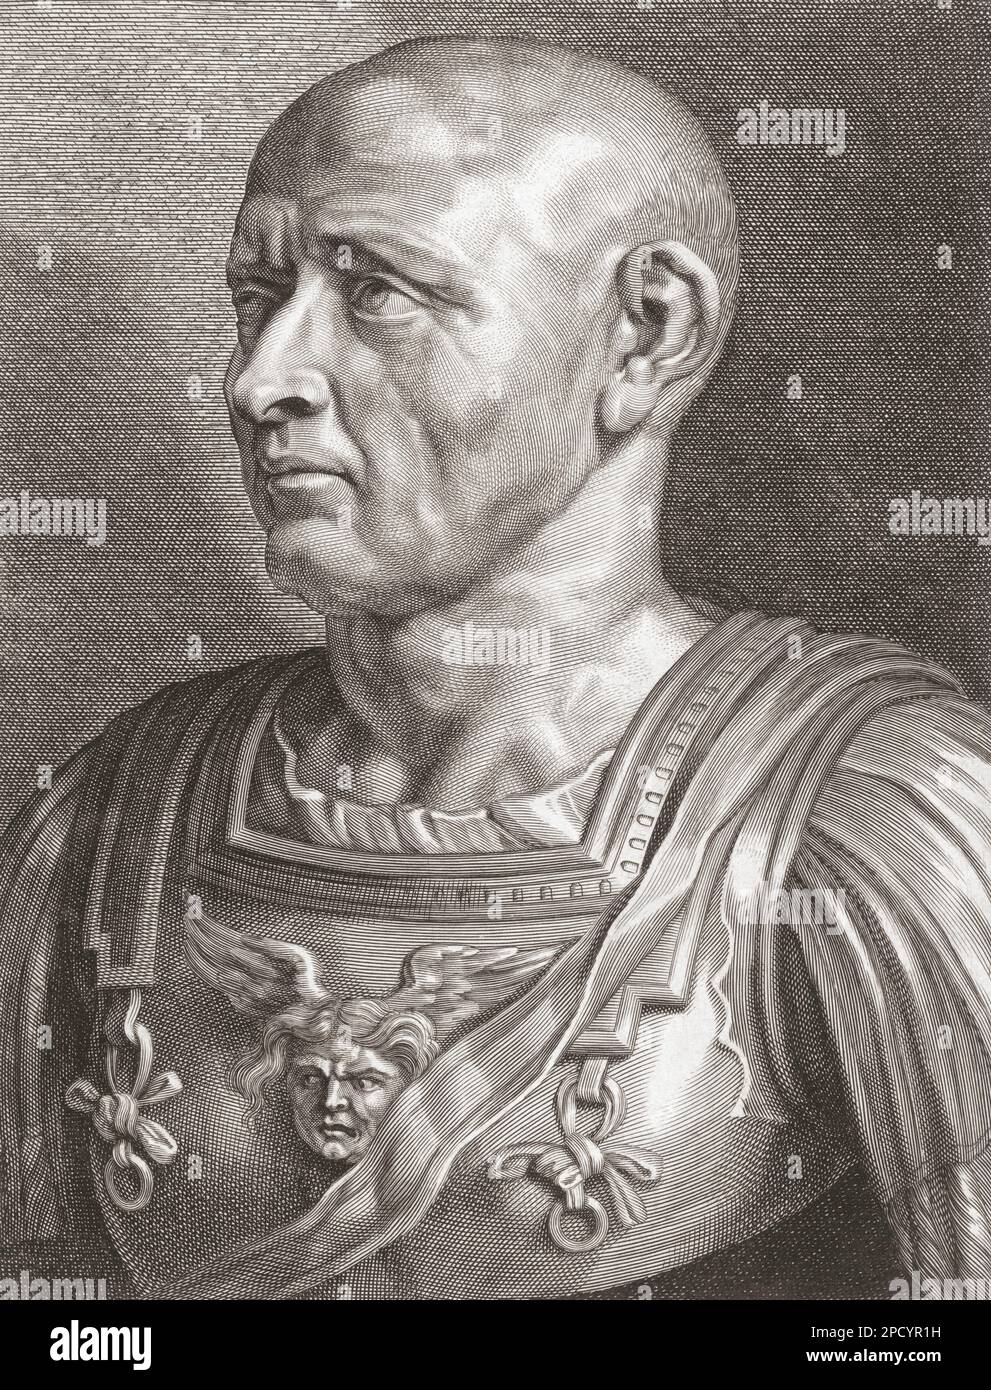 Publius Cornelius Scipio Africanus, c.235 BC - 183 BC. Römischer General, der Hannibal im Zweiten Punischen Krieg besiegte. Aus einer Gravur von Paulus Pontius nach dem Werk von Peter Paul Rubens. Stockfoto